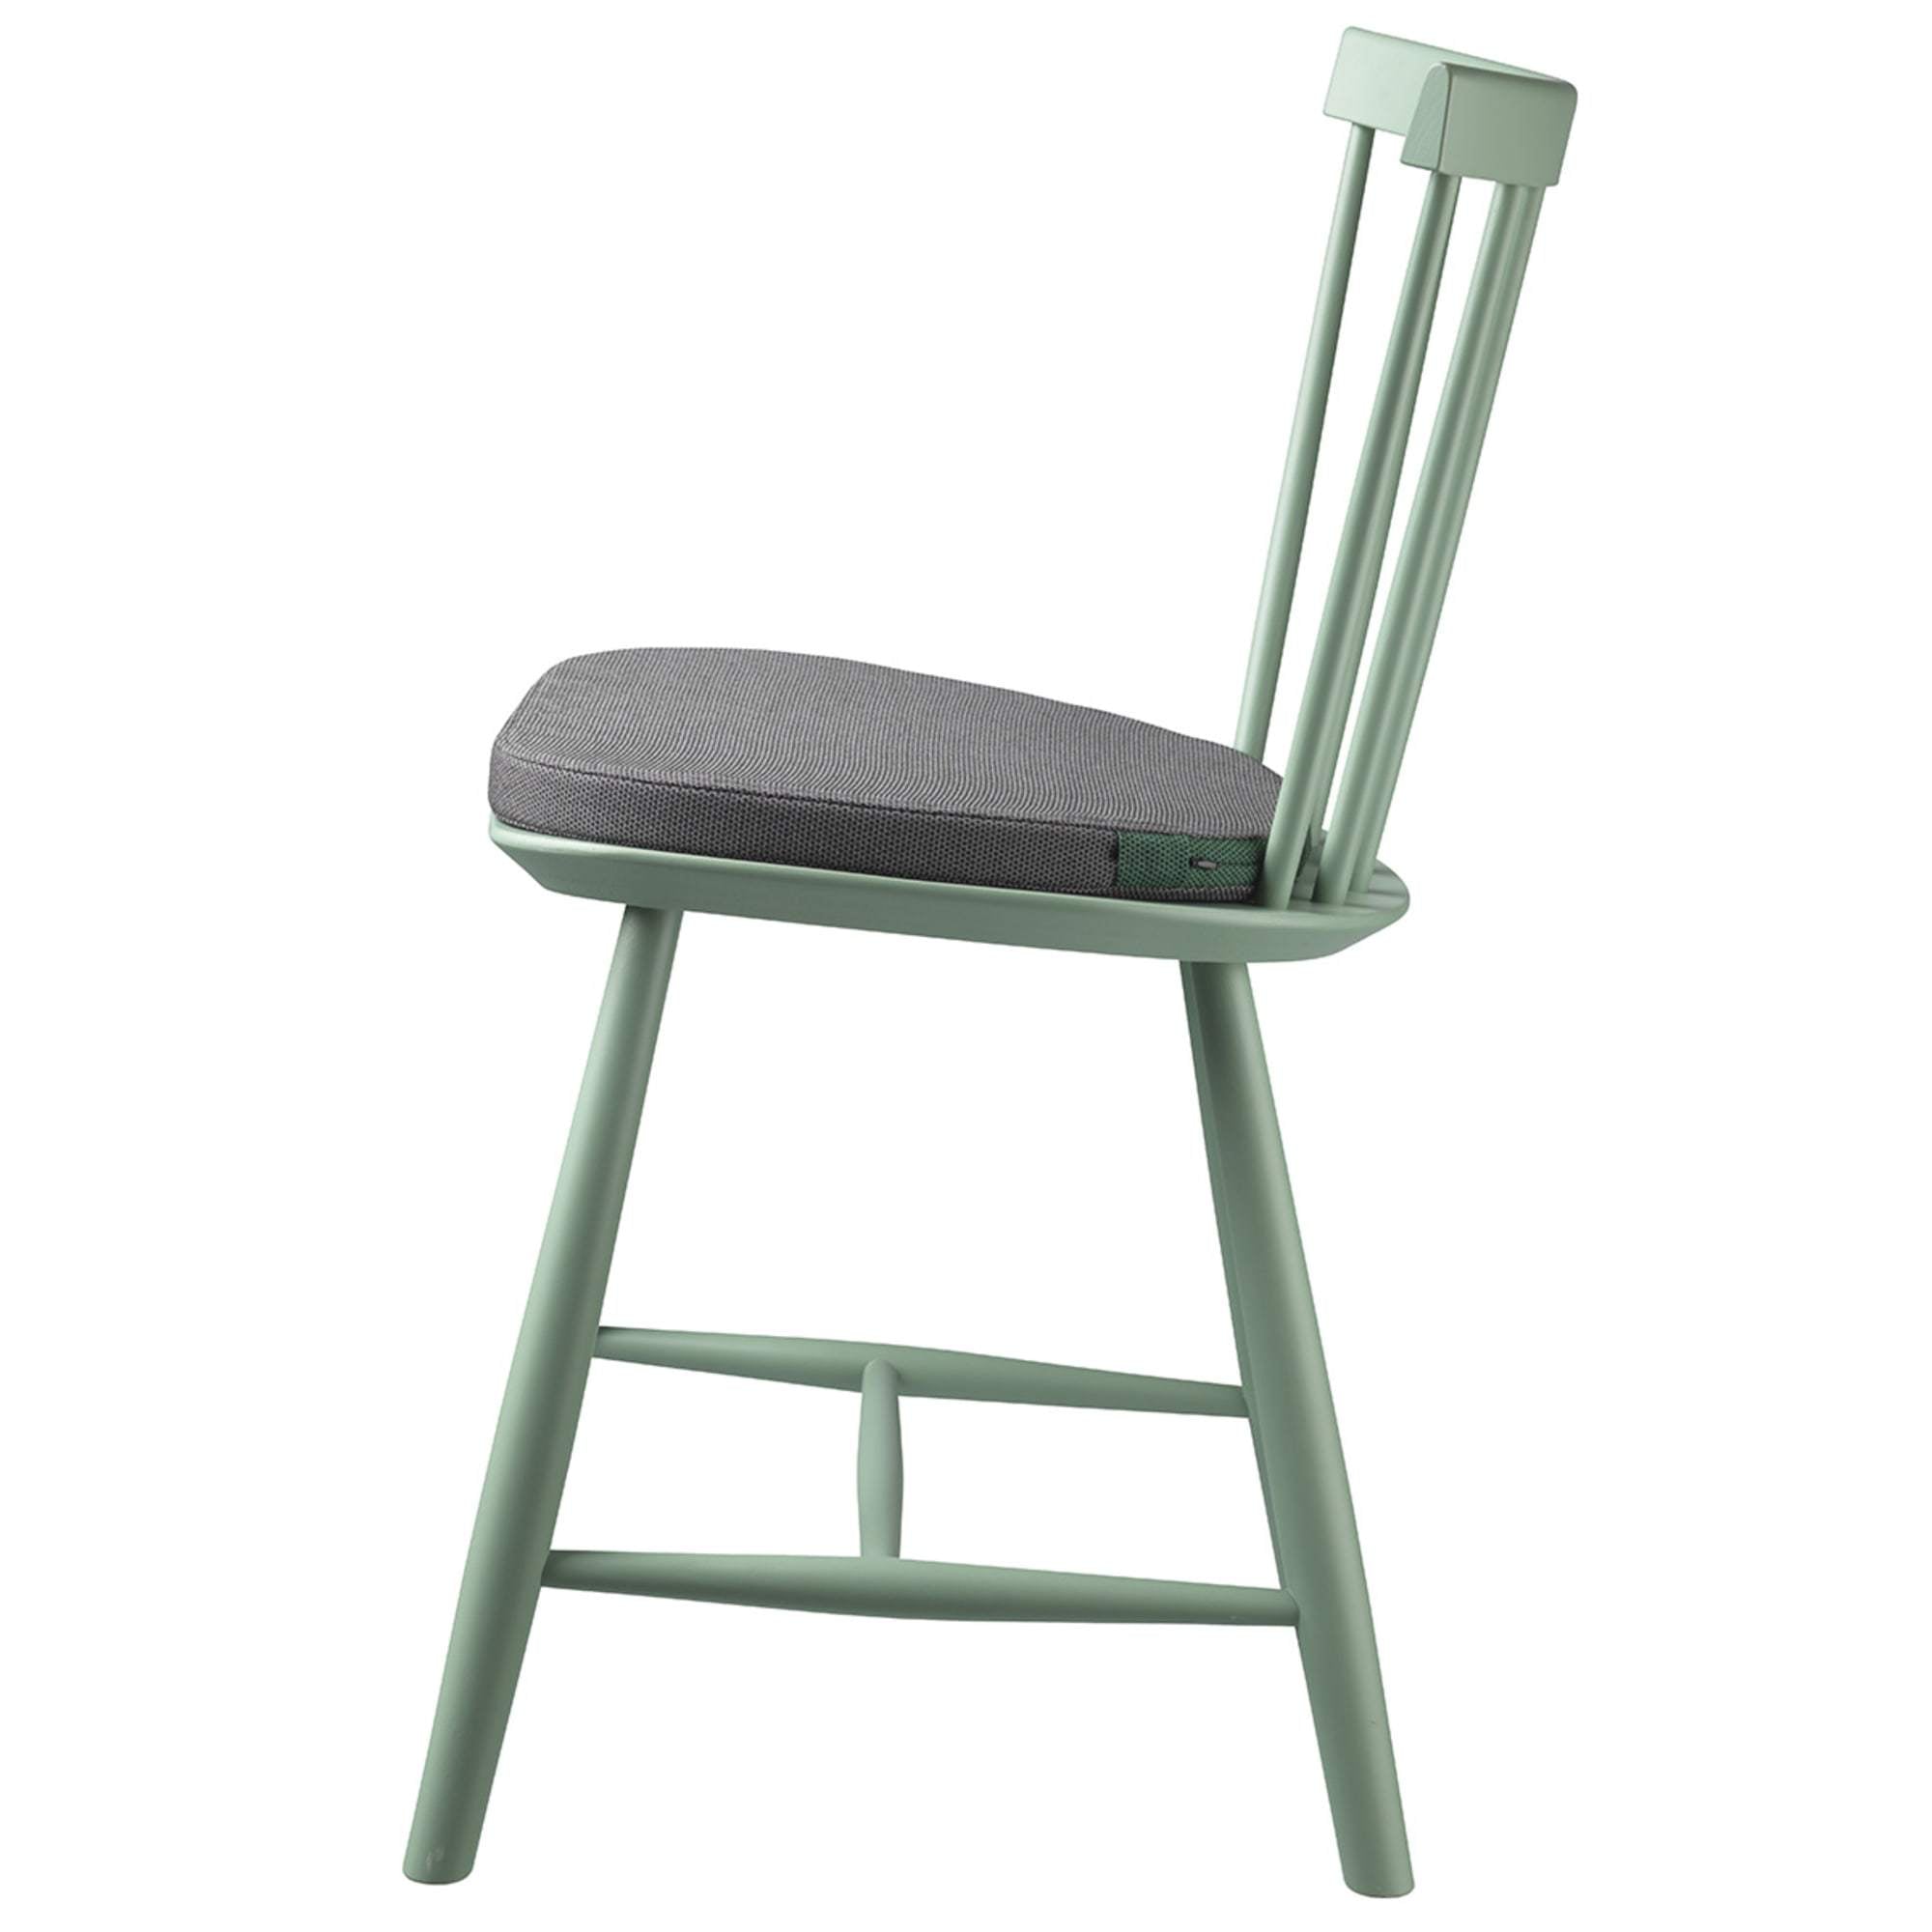 Fdb Møbler R4 sittdyna för J46 -stol, grå/grön